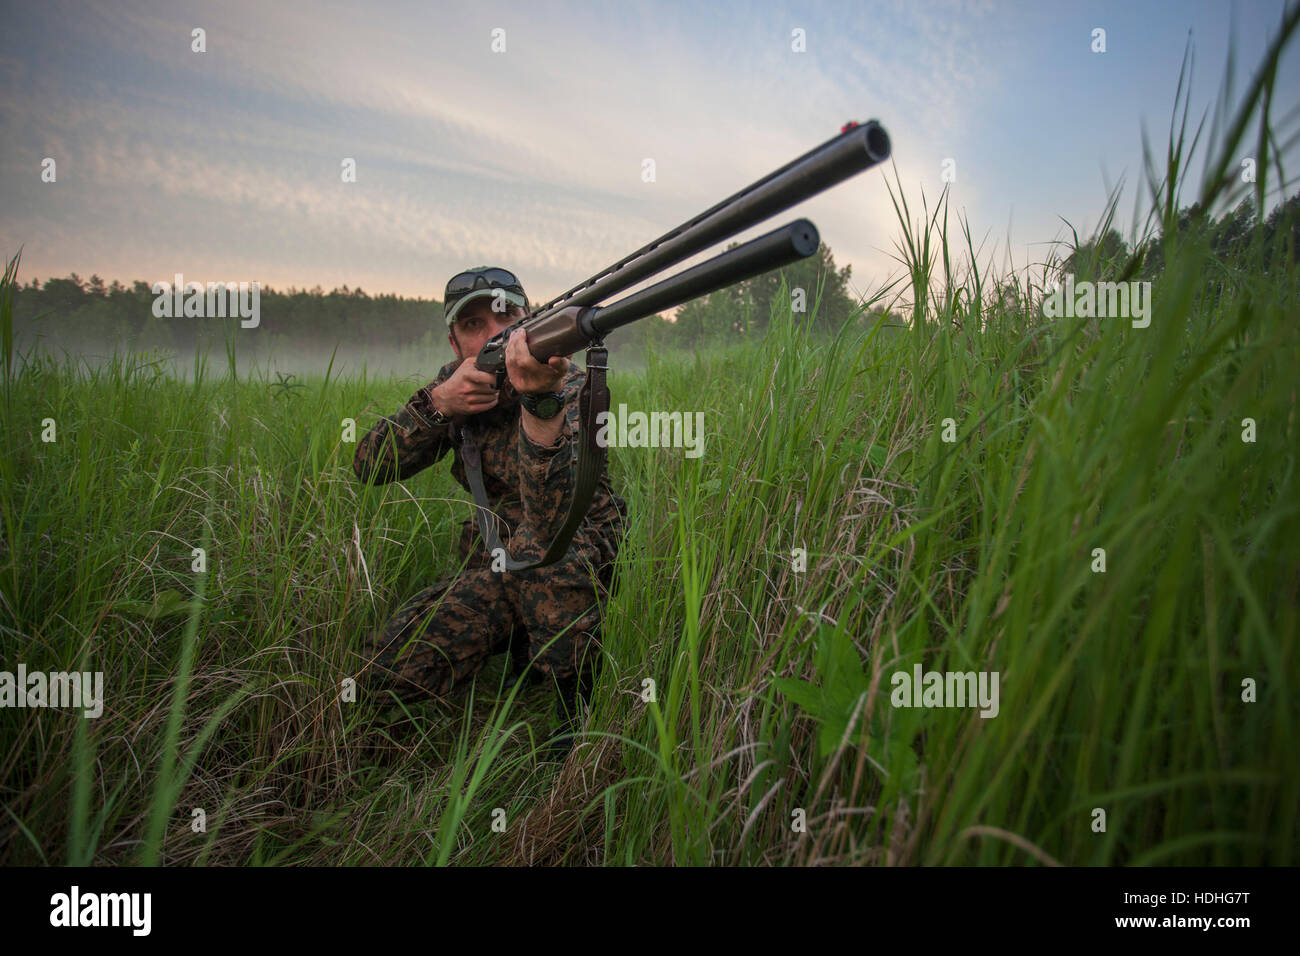 Carabine Hunter visant tout en s'agenouillant sur terrain against sky Banque D'Images